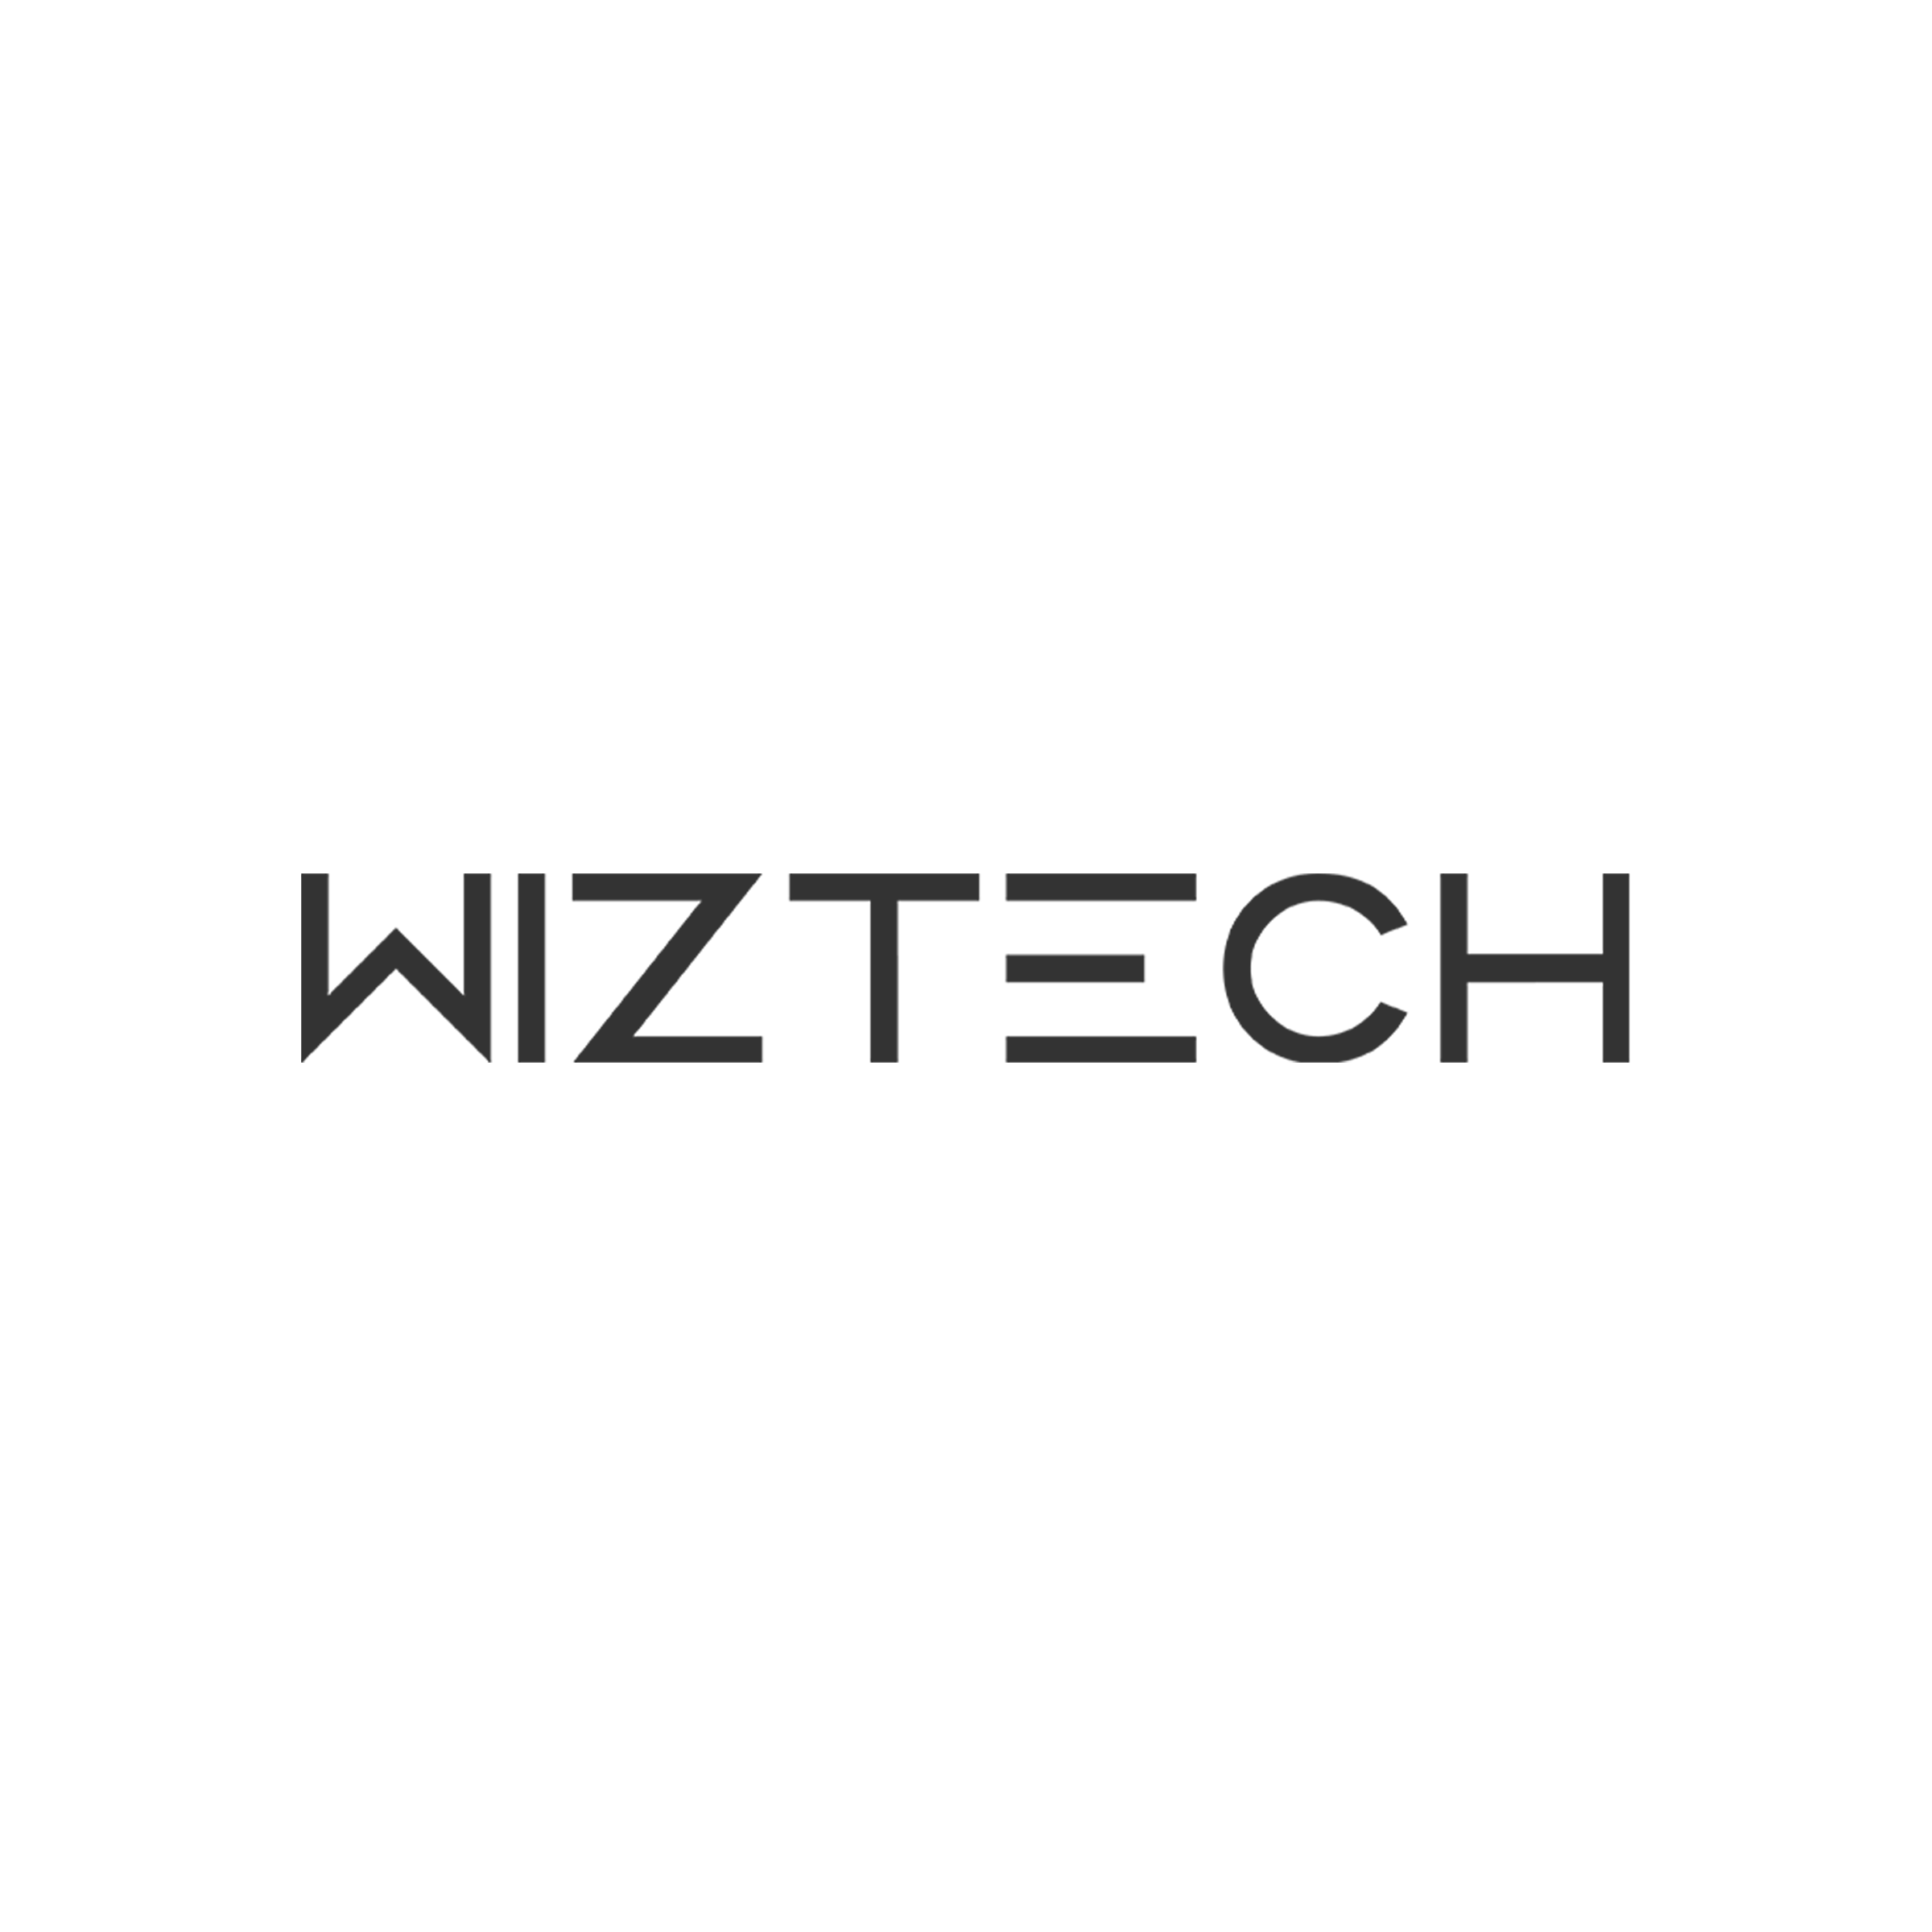 Wiz Technologies (s) Pte. Ltd. company logo